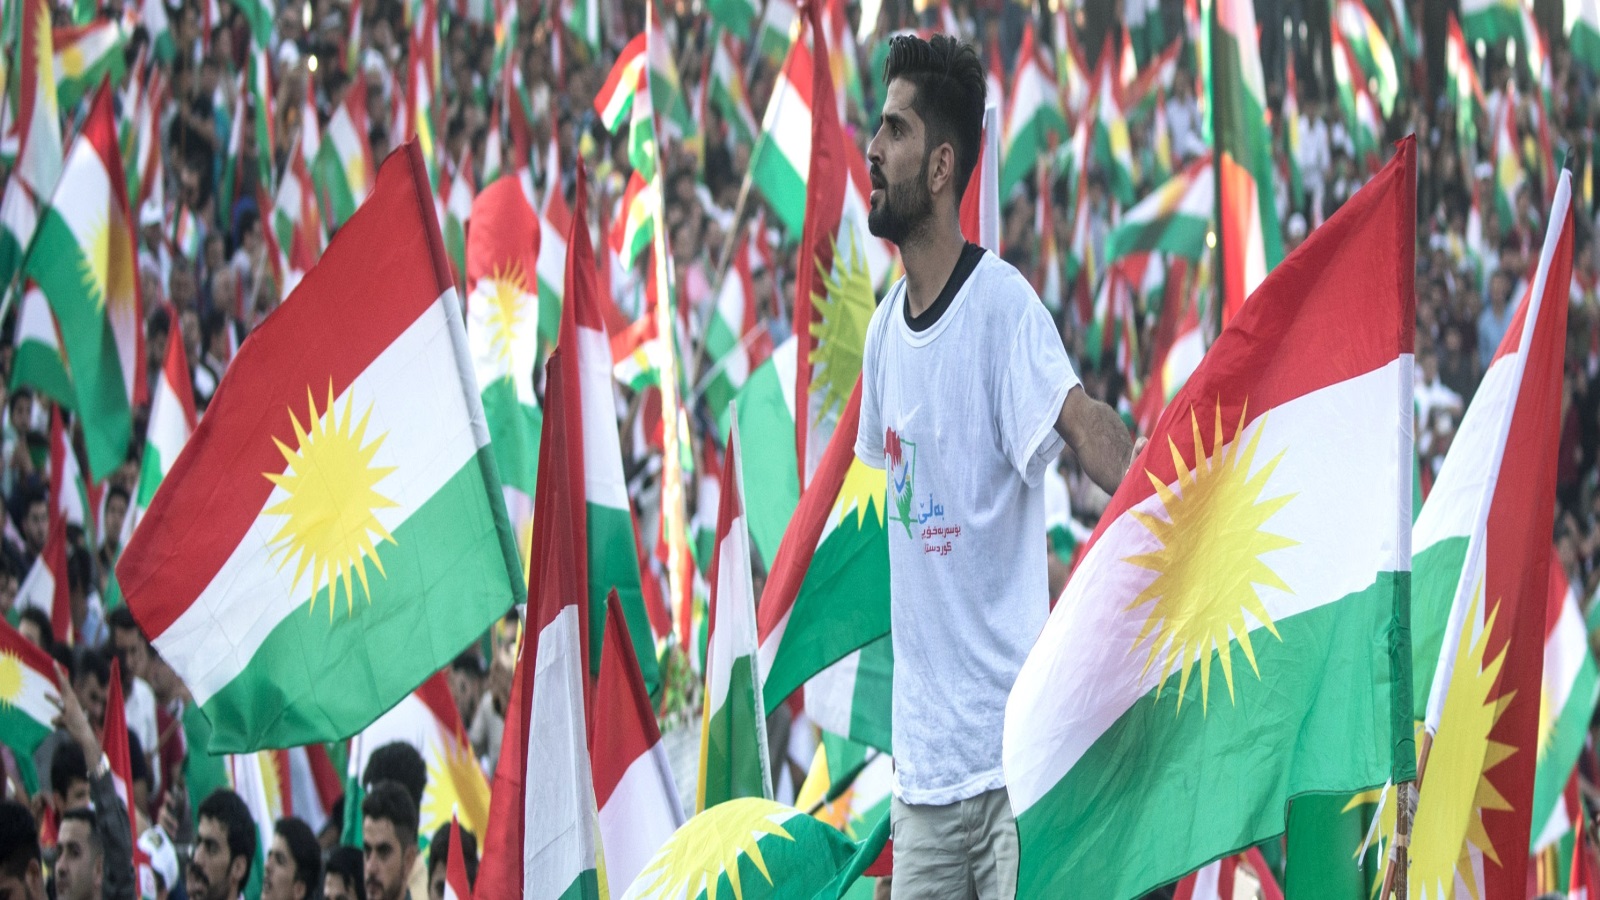 ‪الأحداث اللاحقة على الاستفتاء أدت إلى تغير المزاج وفقدان الأكراد ثقتهم بأصدقائهم المزعومين‬ (غيتي)